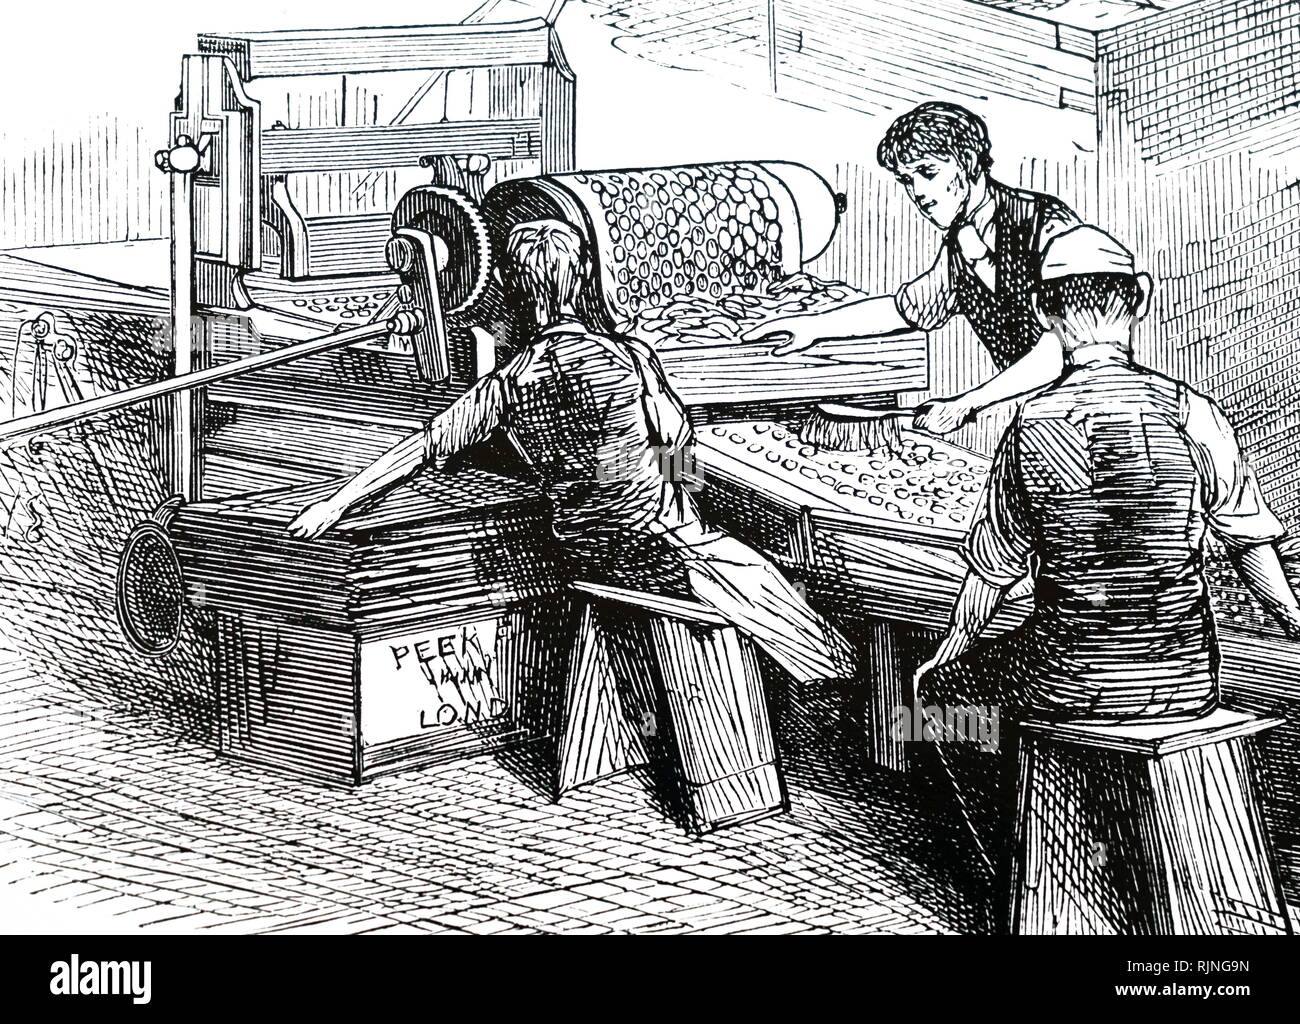 Ein kupferstich mit der Darstellung der Keks Schneidemaschine von Peek, keksfabrik Frean&Co., Southwark, London. Vom 19. Jahrhundert Stockfoto